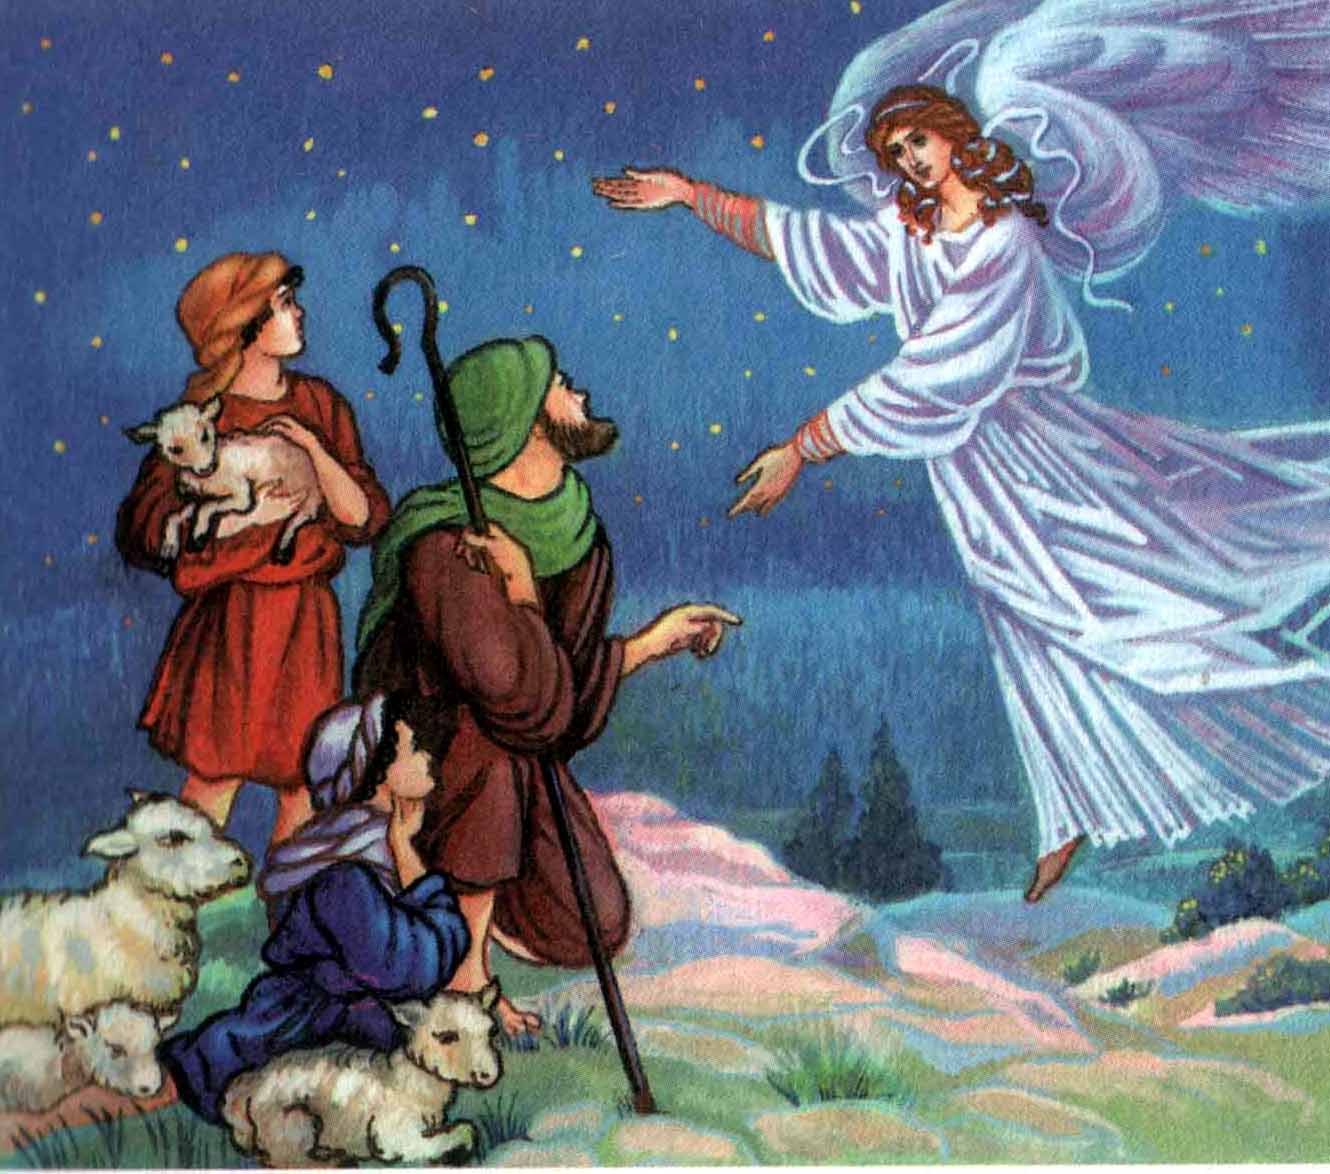 История говорит о том, что Иисус на самом деле родился не в хлеву и не 25 декабря